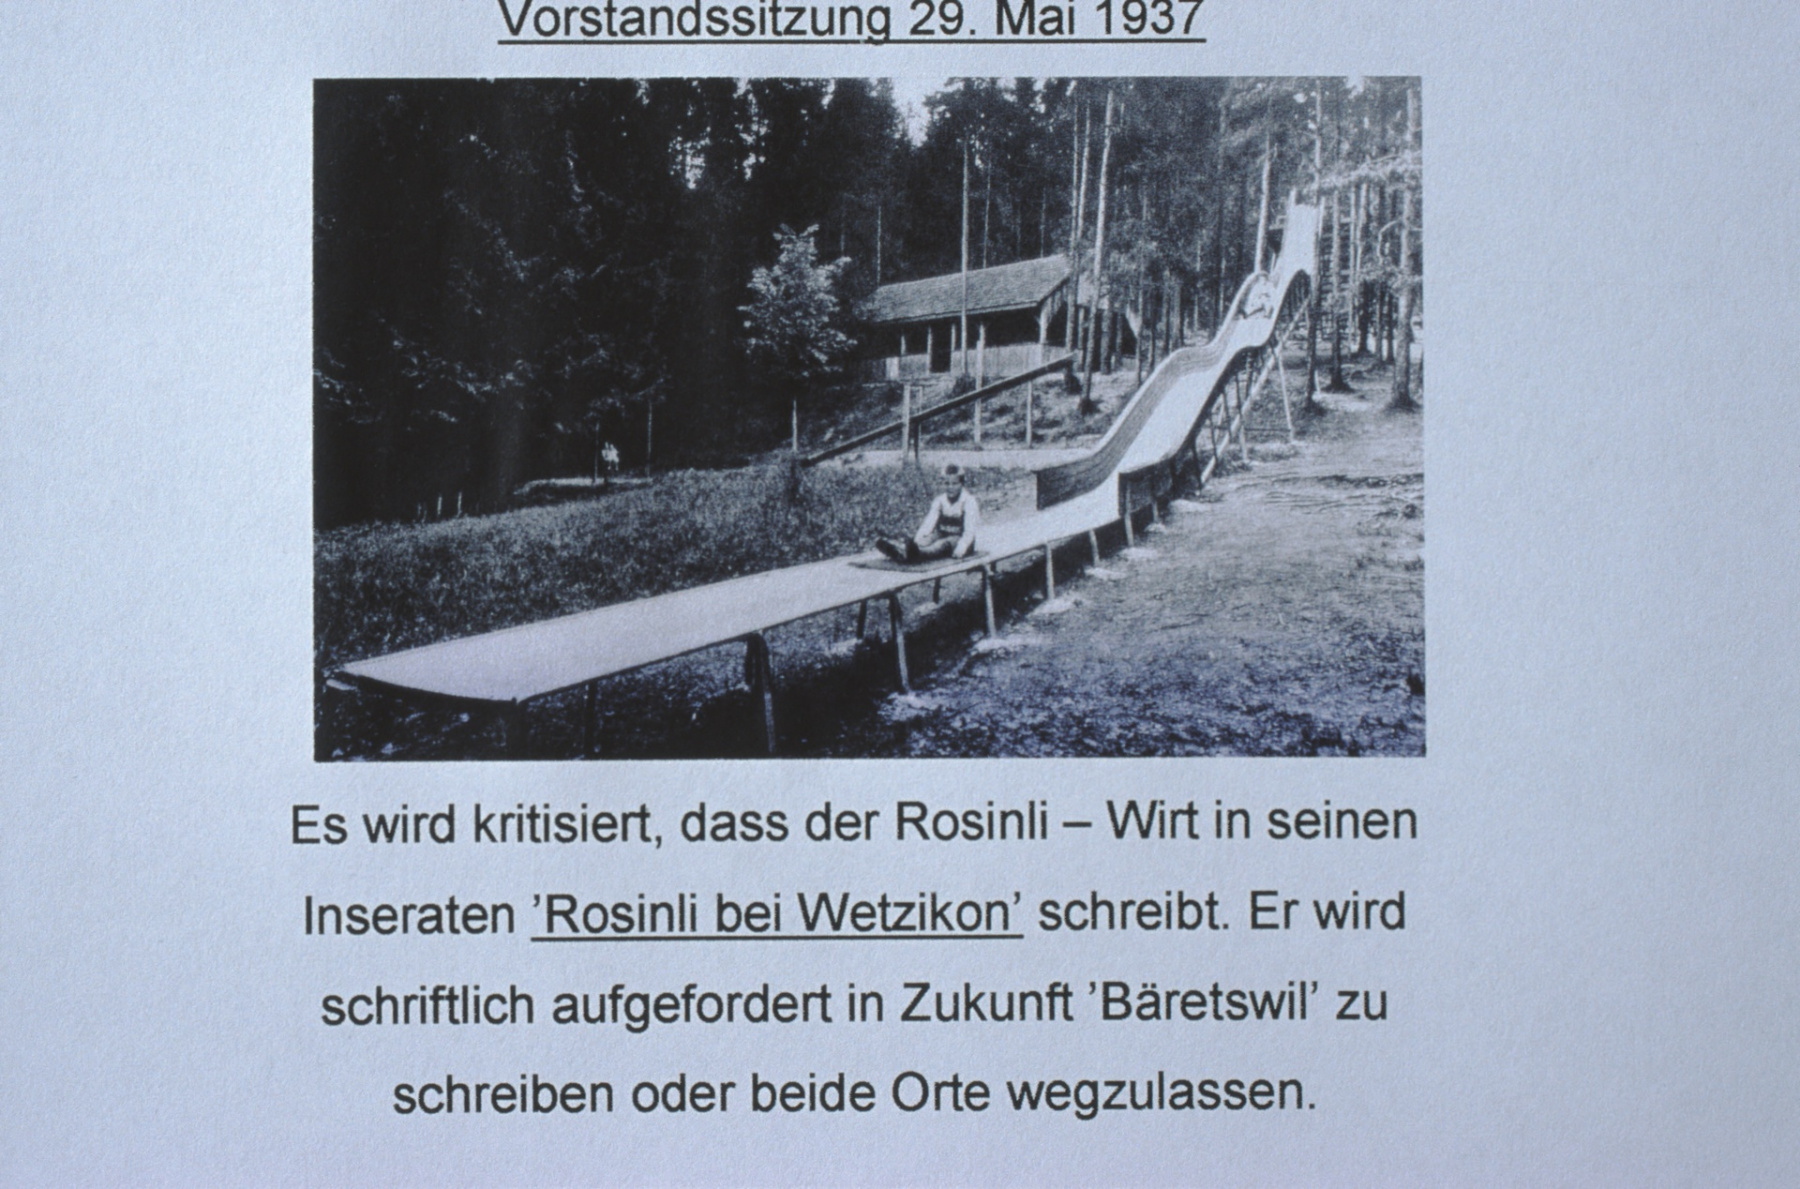 Rosinli Wirt, Rosinli bei Wetzikon 1937